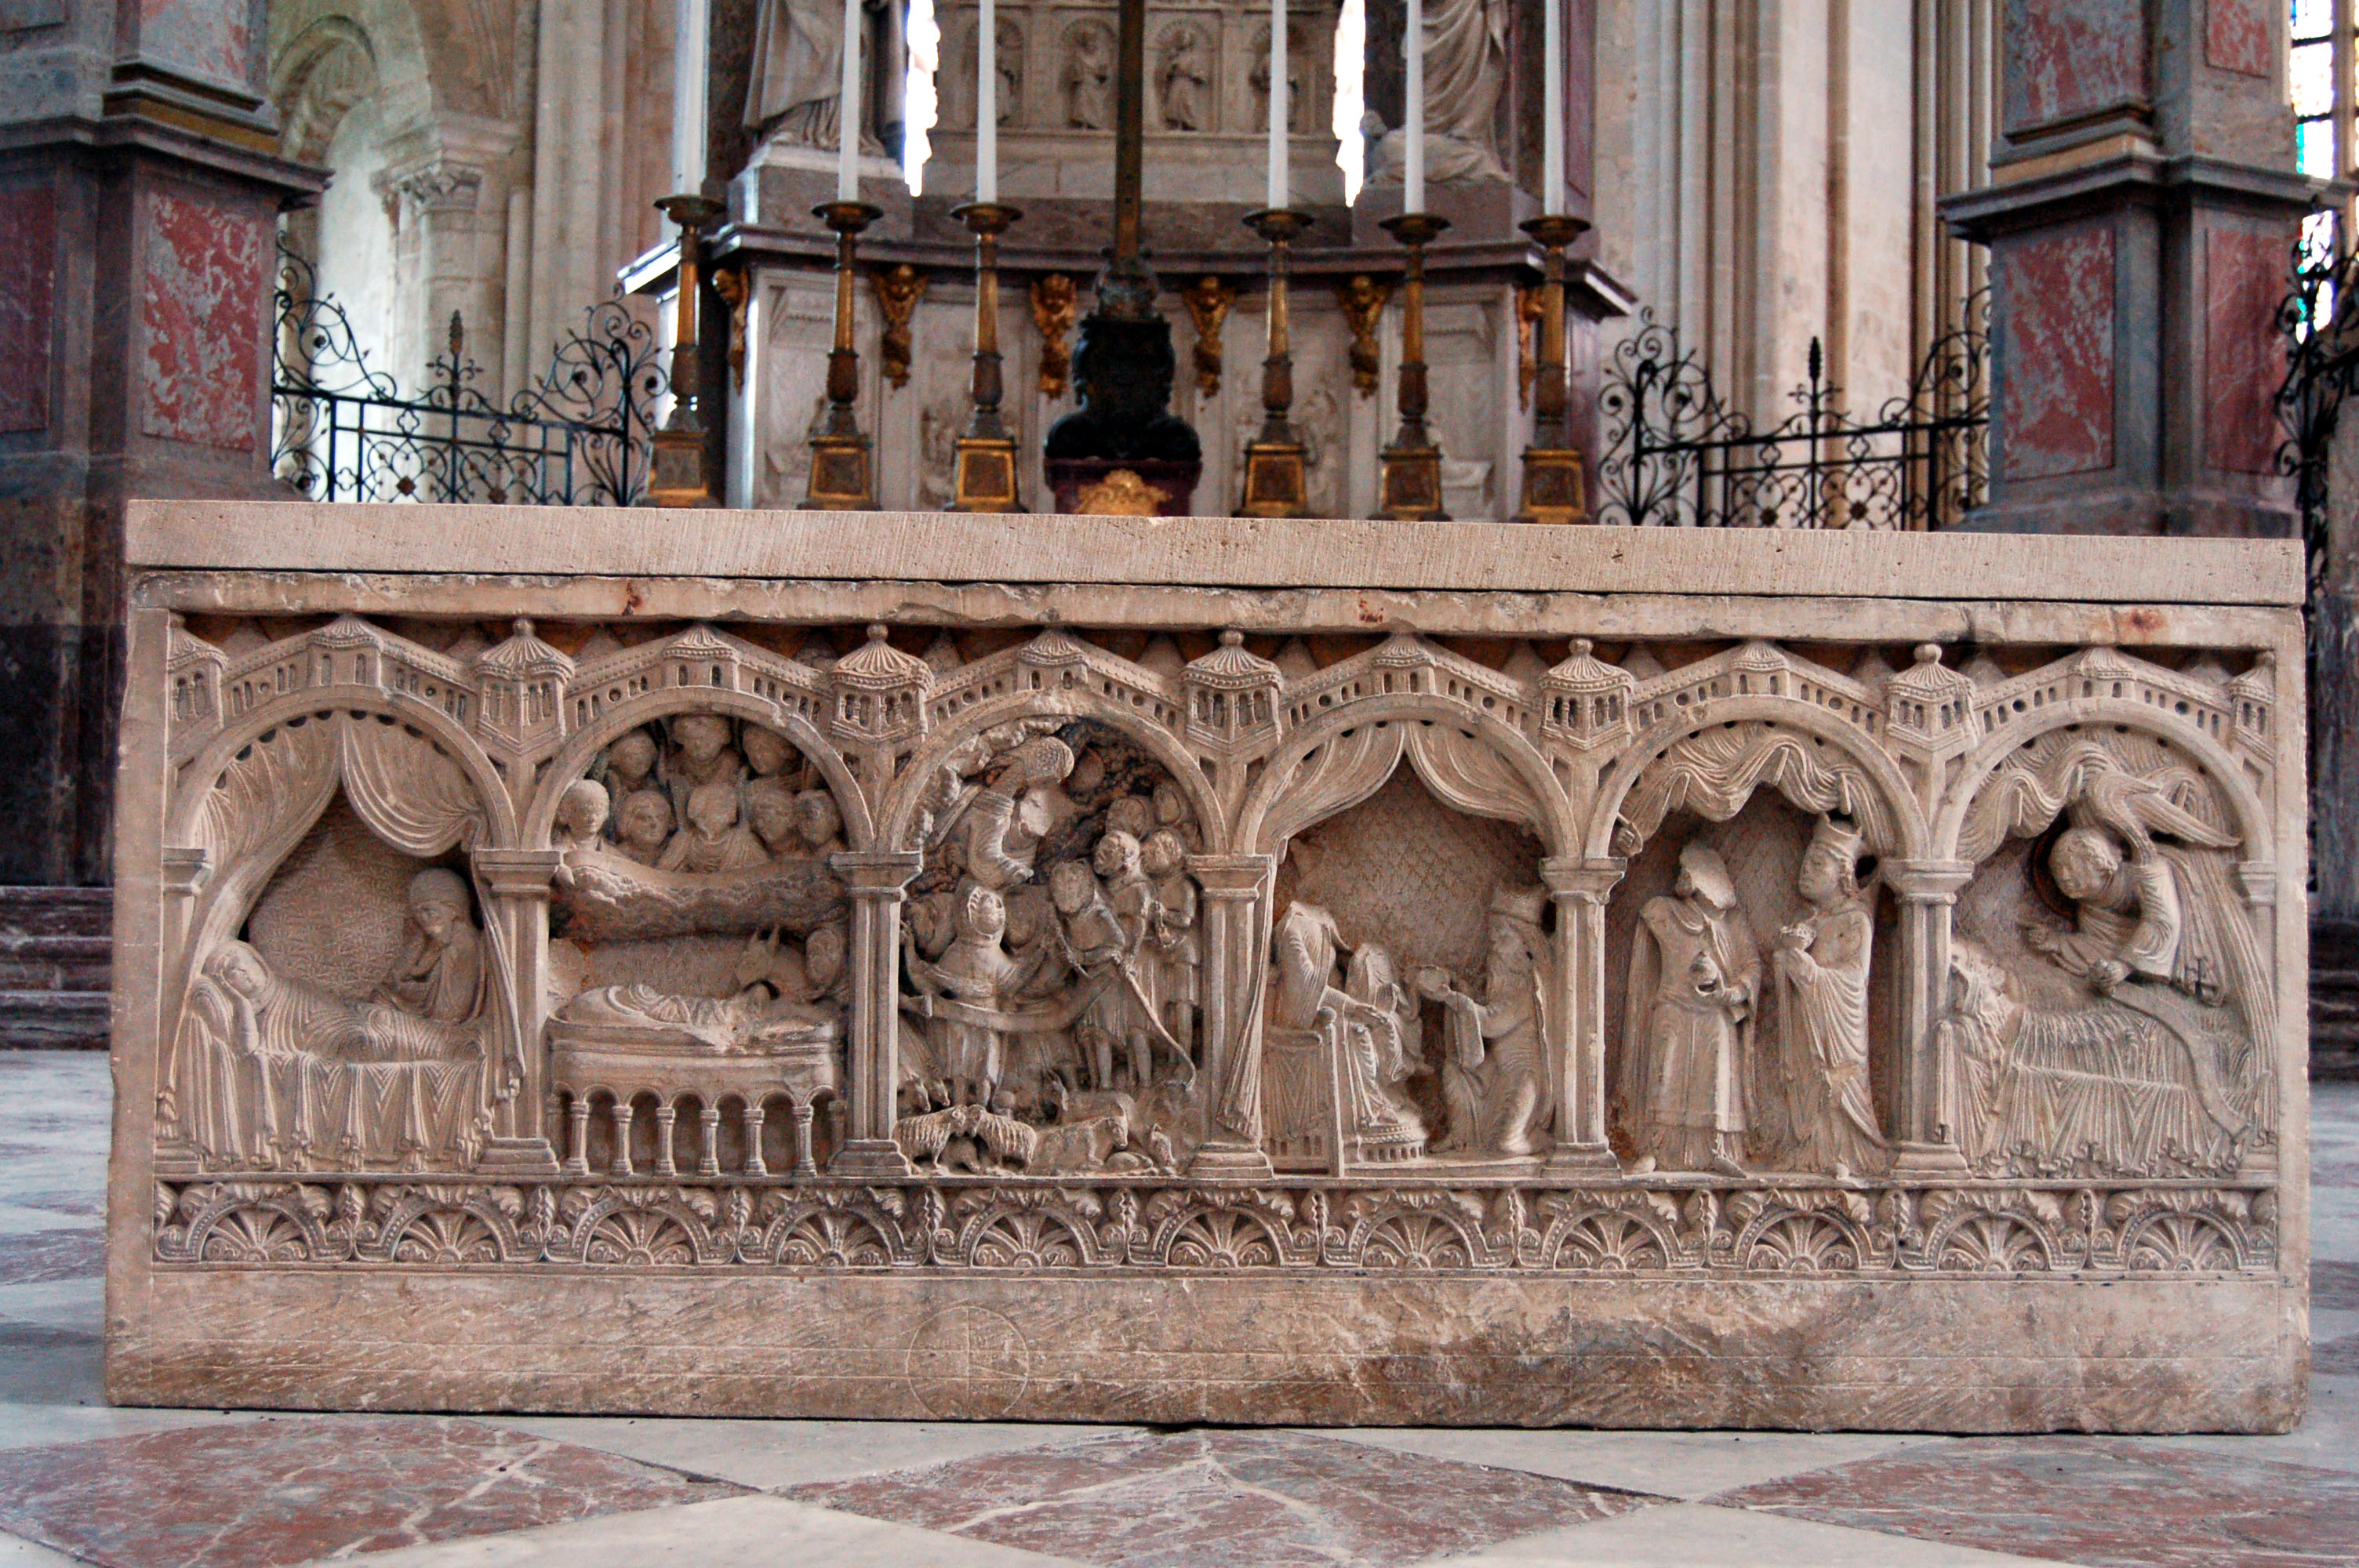 Au centre du chœur, le premier coffre funéraire ou reliquaire de Richard Ier et de Richard II, de style roman du XIIe siècle a été offert par Henri II Plantagenêt...